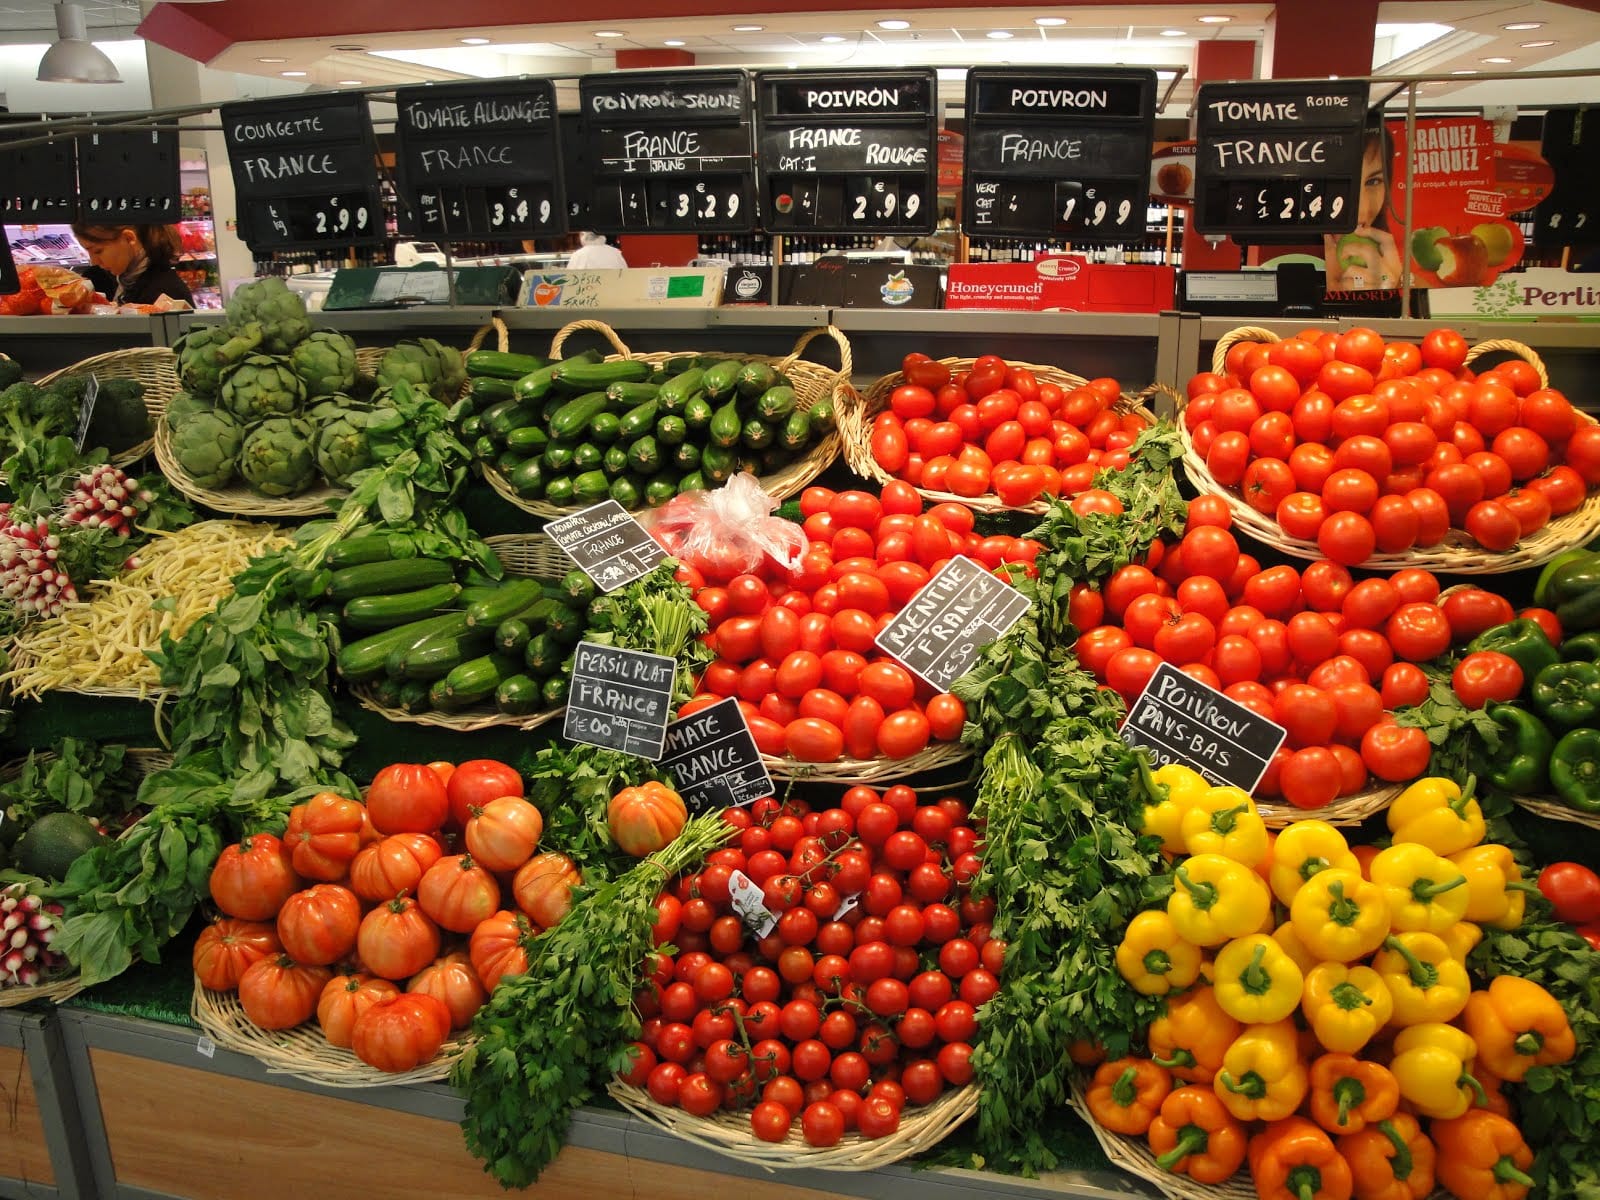 ارتفاع صادرات المنتجات الغذائية الفلاحية بنسبة 97 في المائة ما بين 2010 و2018